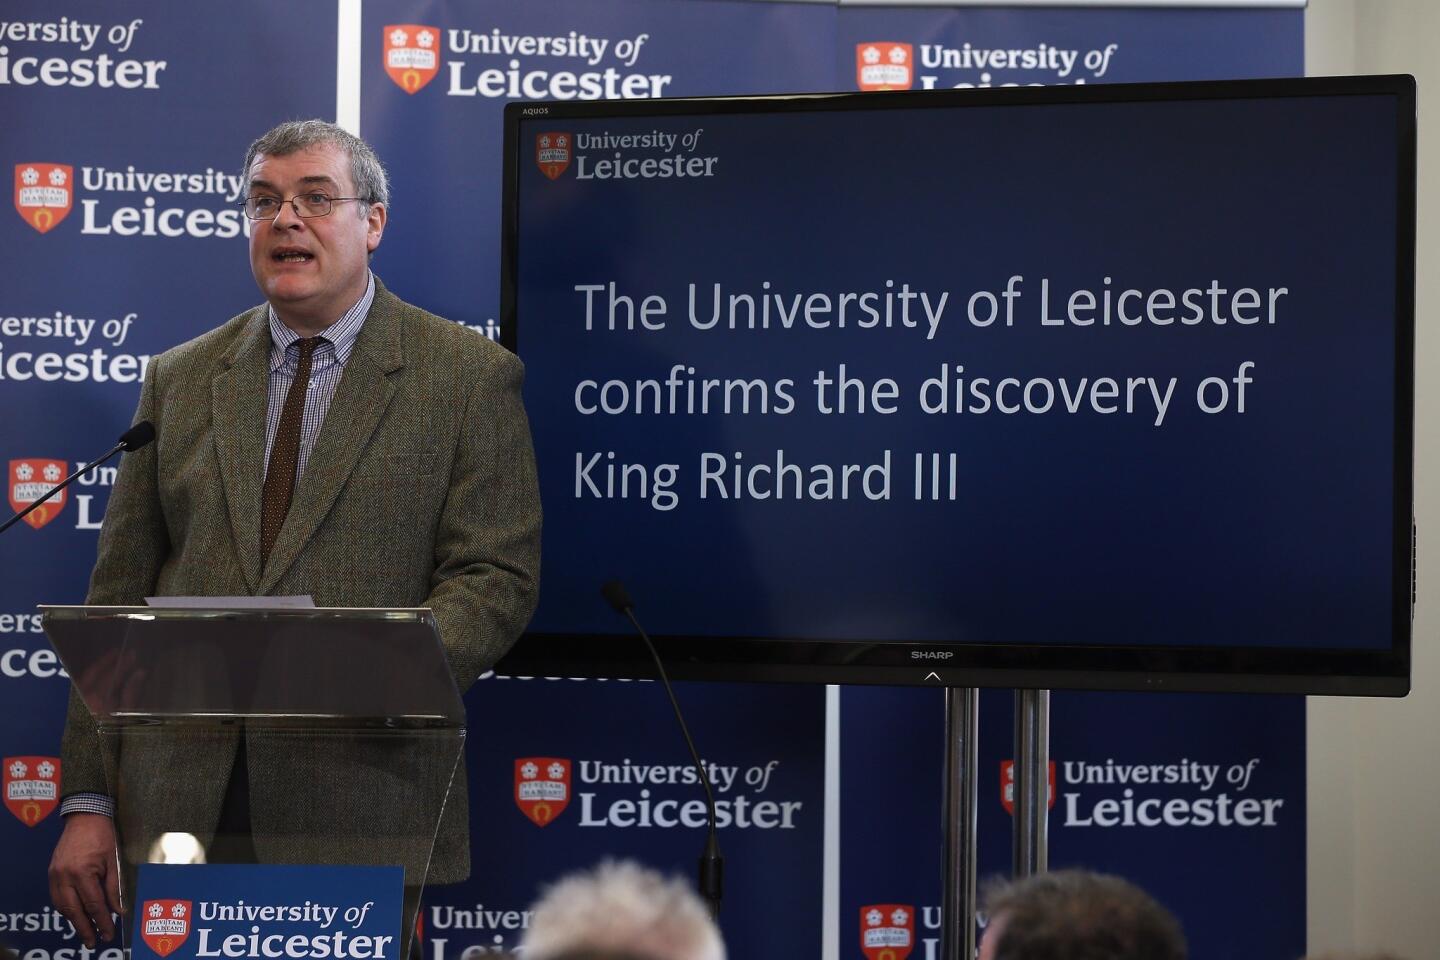 Richard III archaeologist Richard Buckley